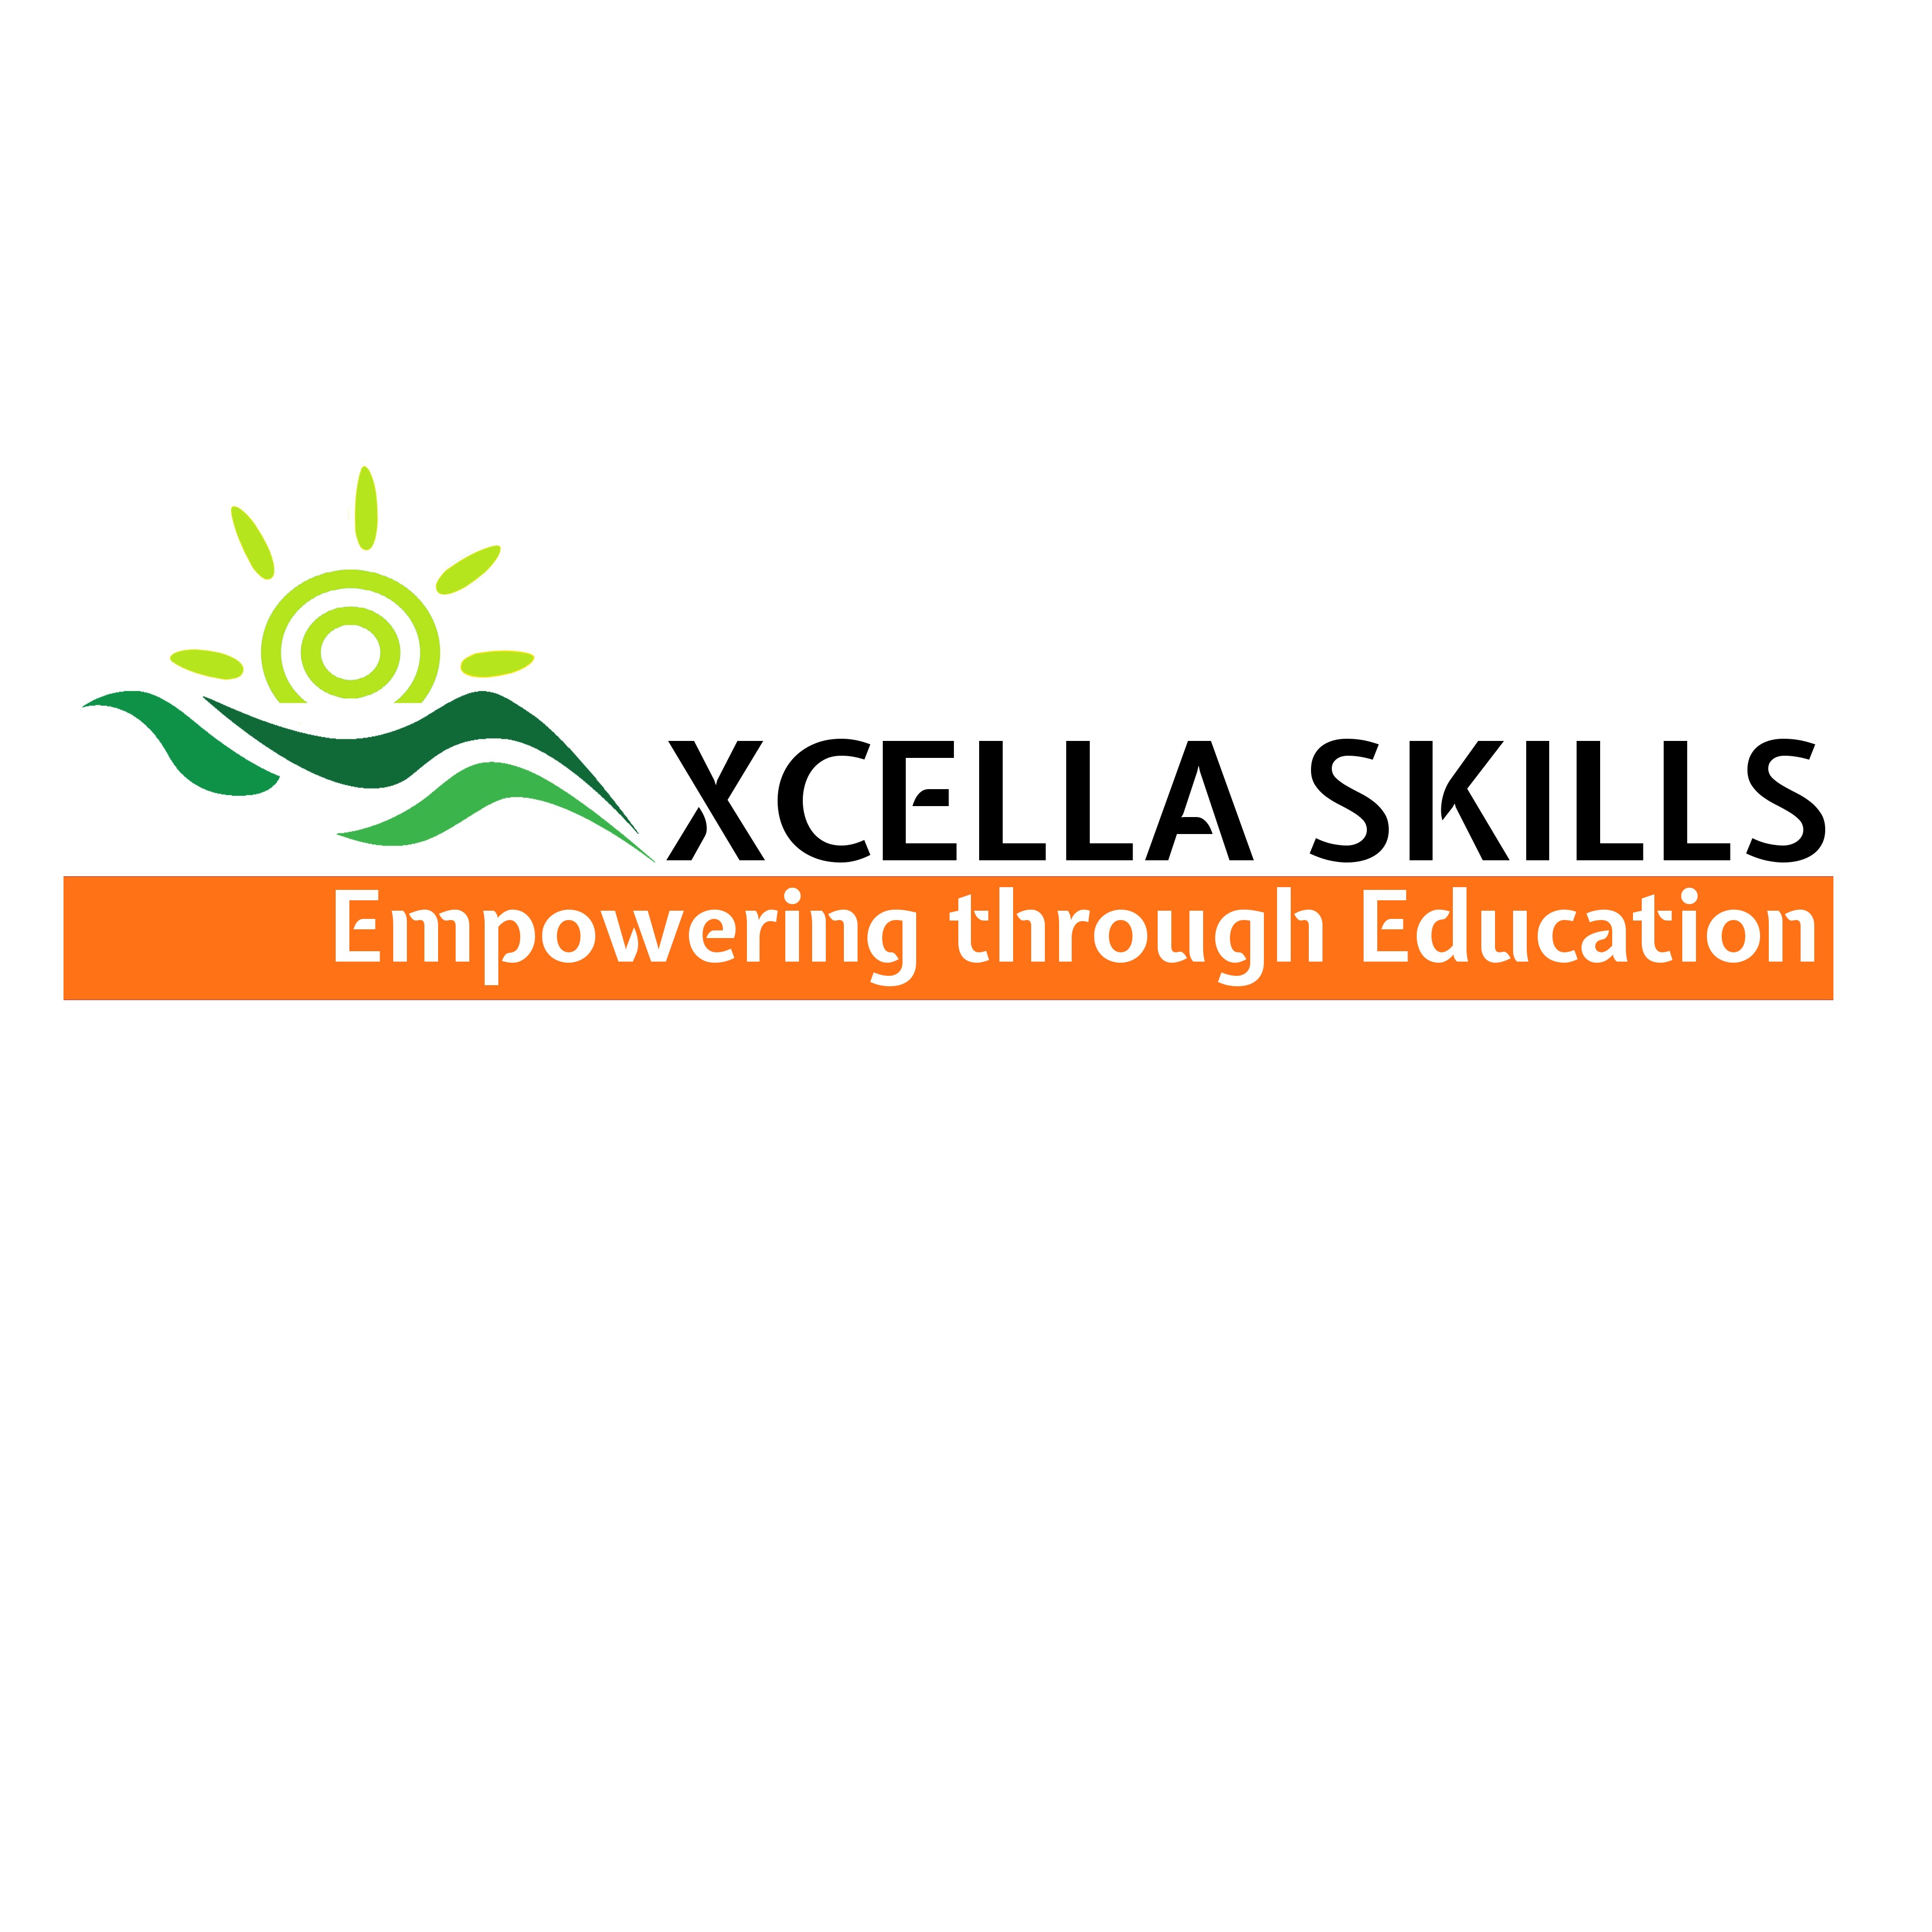 Xcella skills